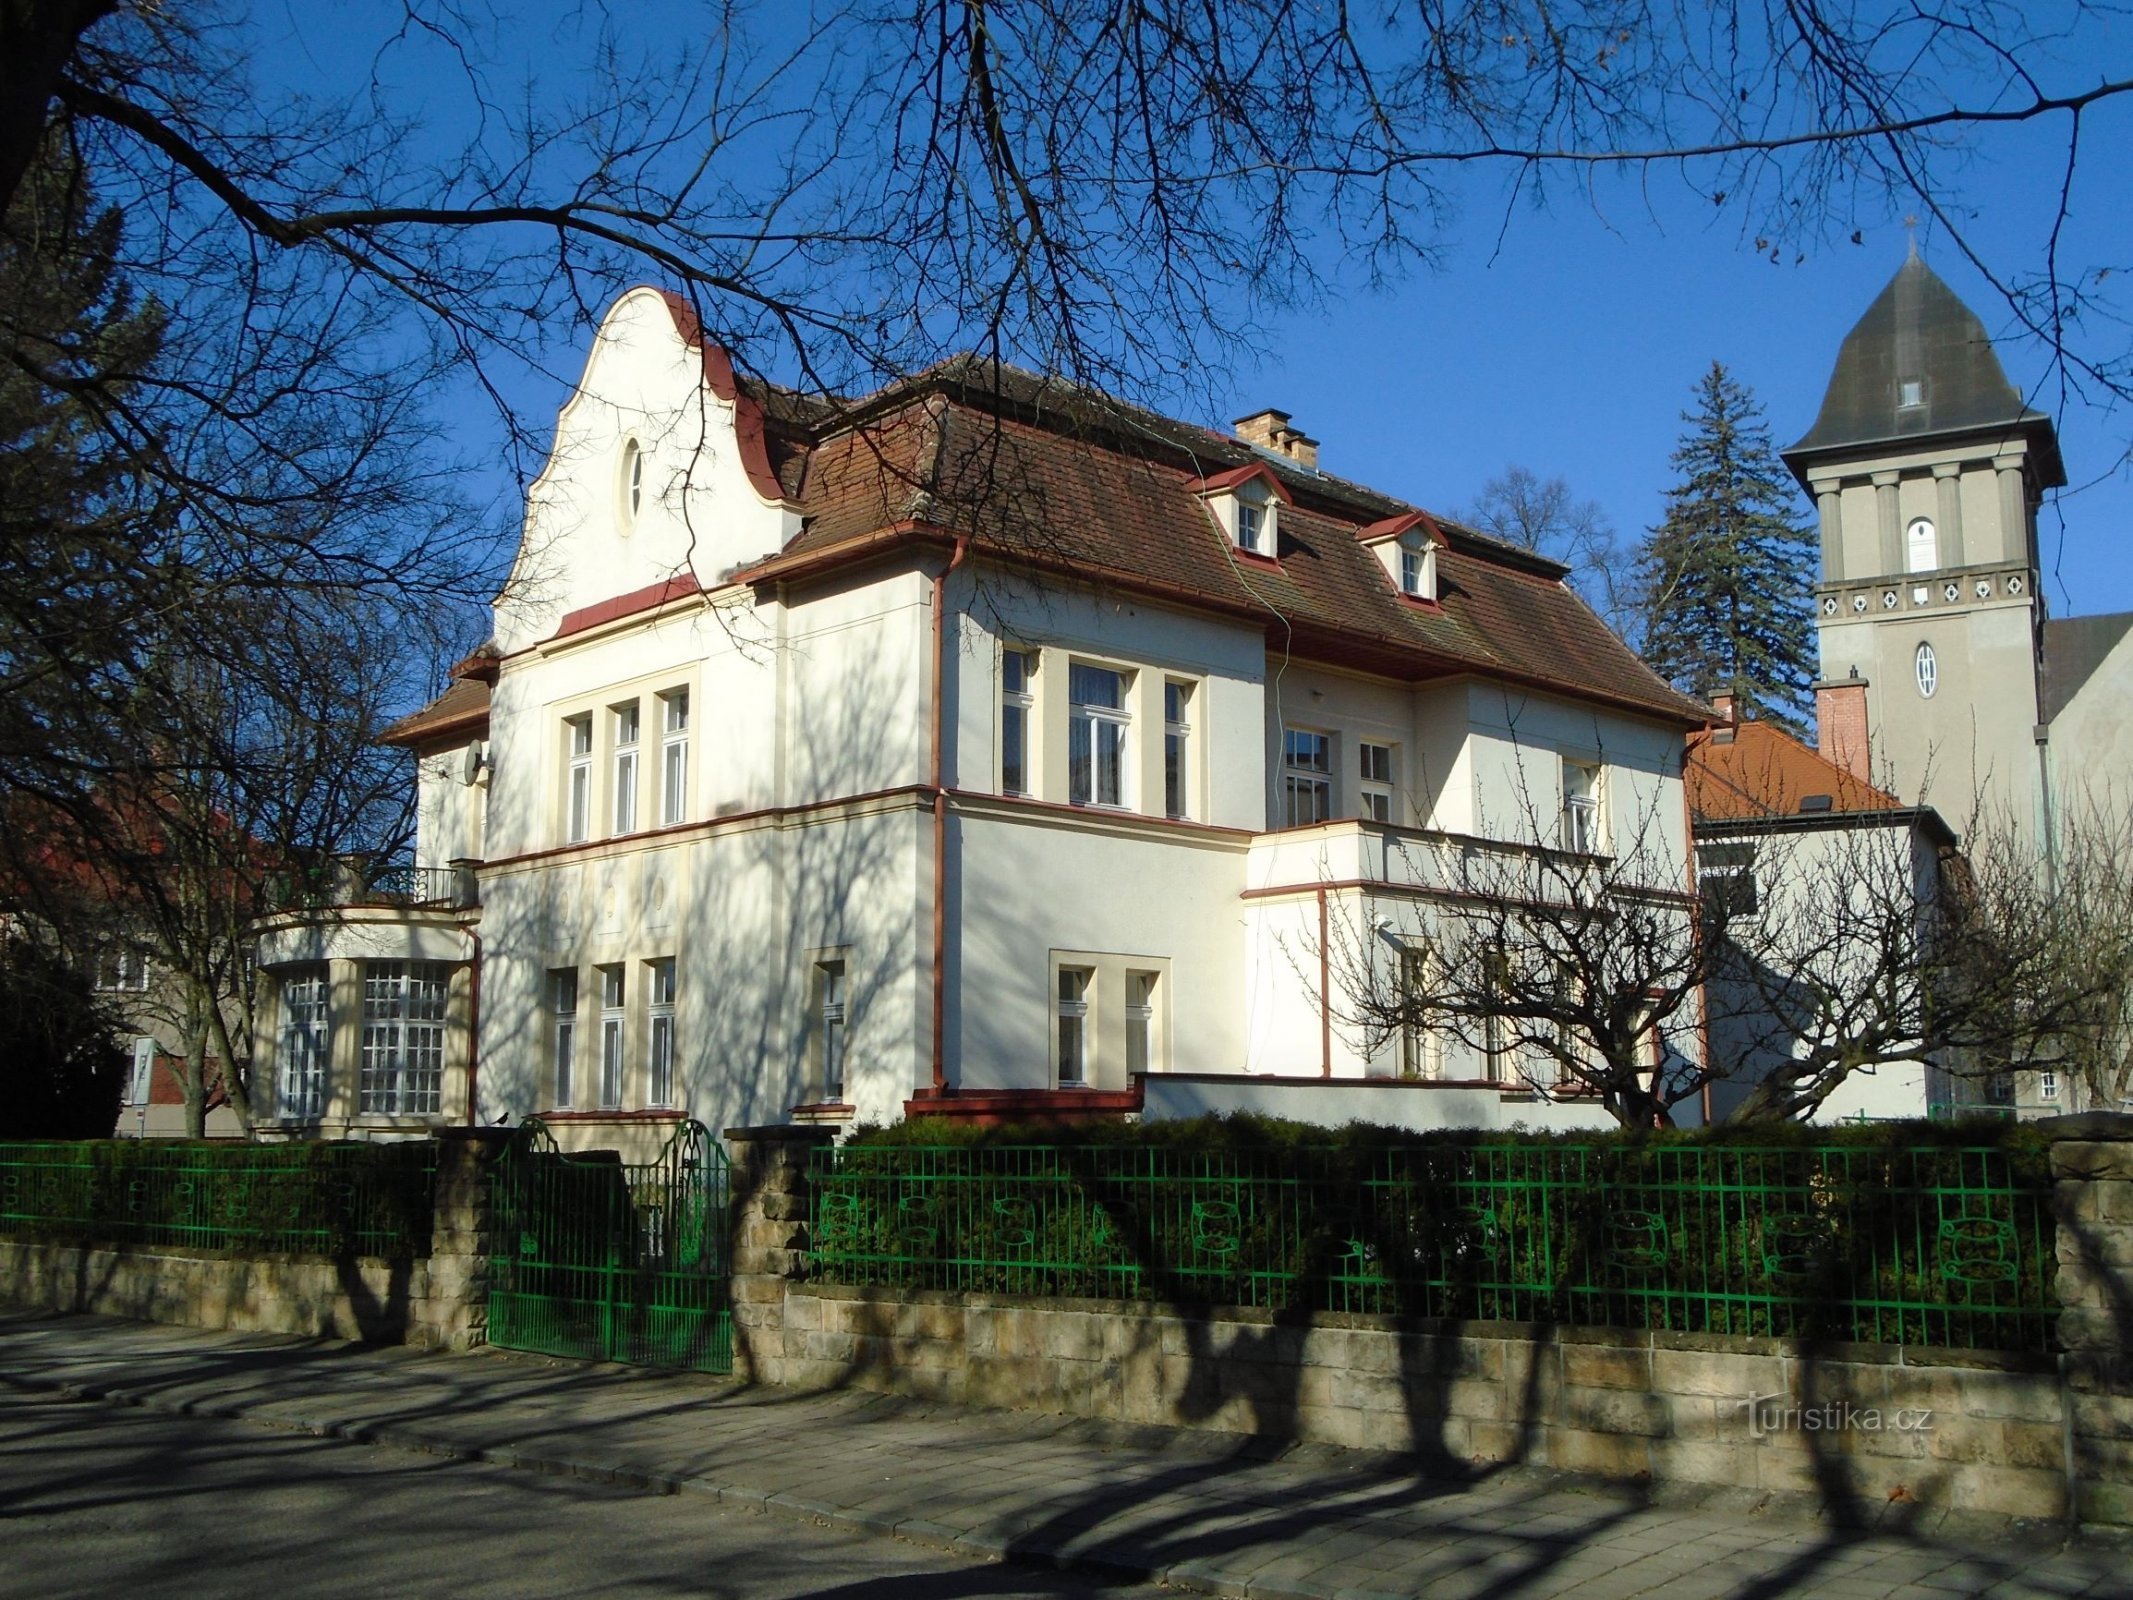 545. számú kastély (Hradec Králové, 7.4.2018. április XNUMX.)